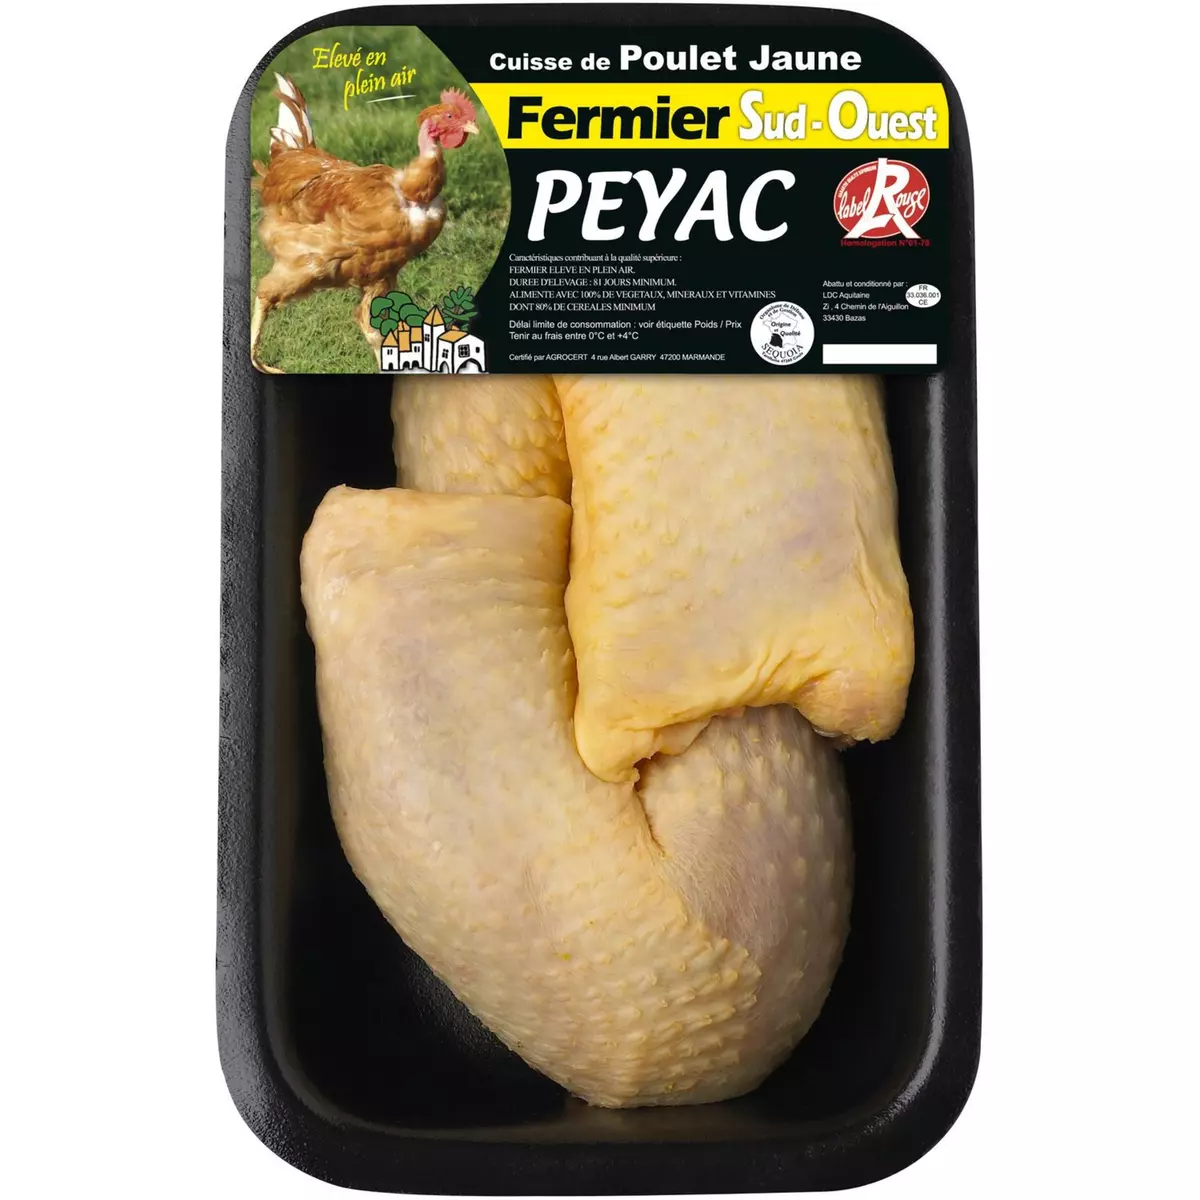 PEYAC Cuisse de poulet jaune 510g